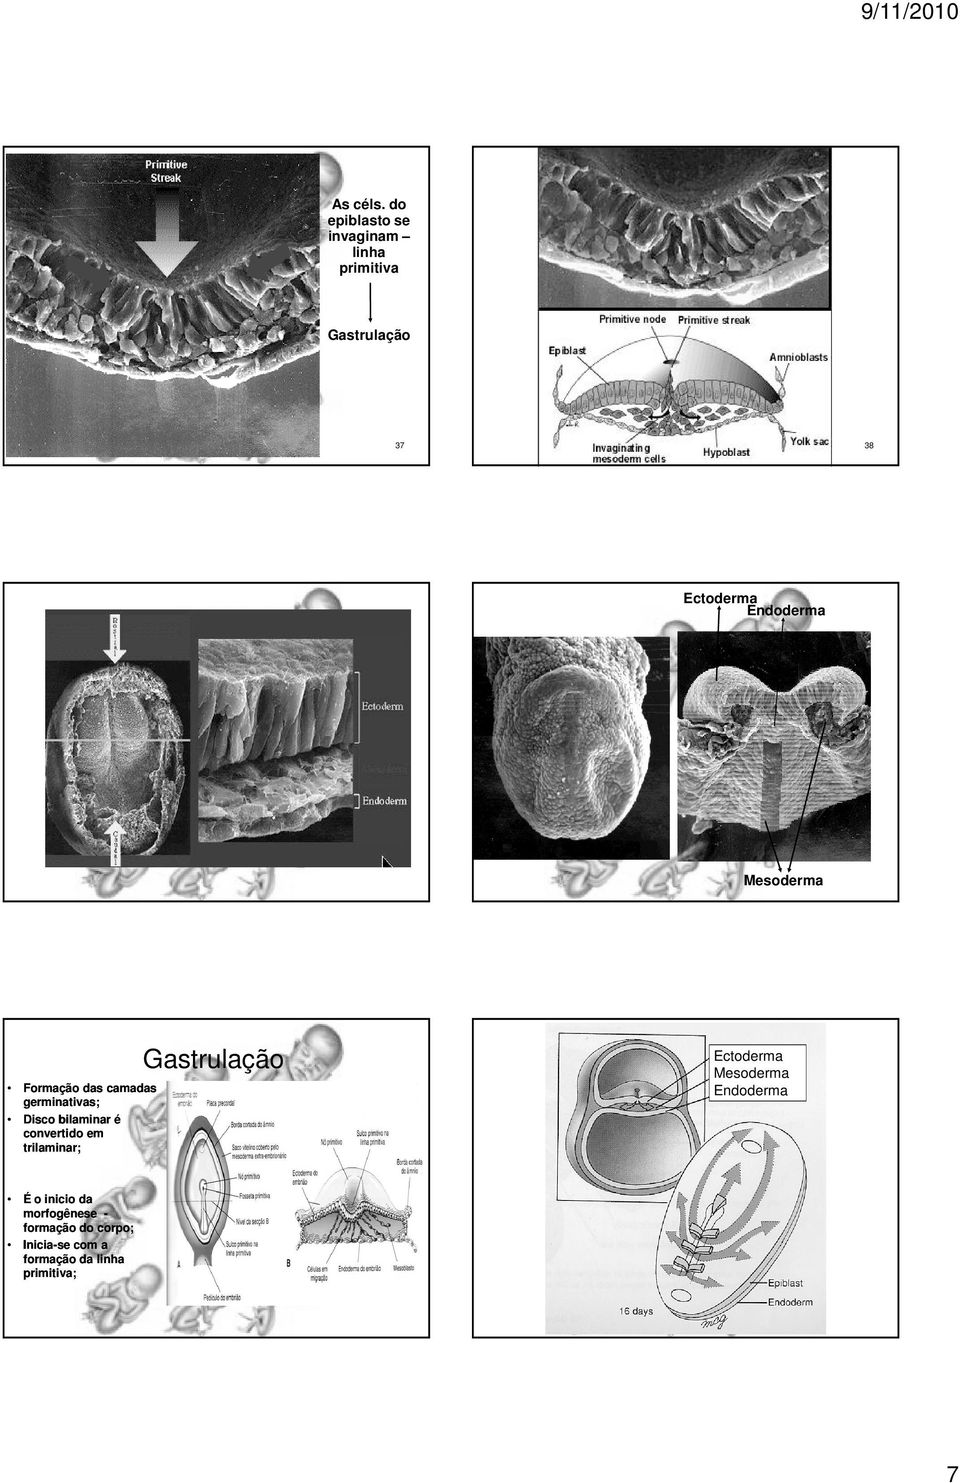 Endoderma Mesoderma Formação das camadas germinativas; Disco bilaminar é